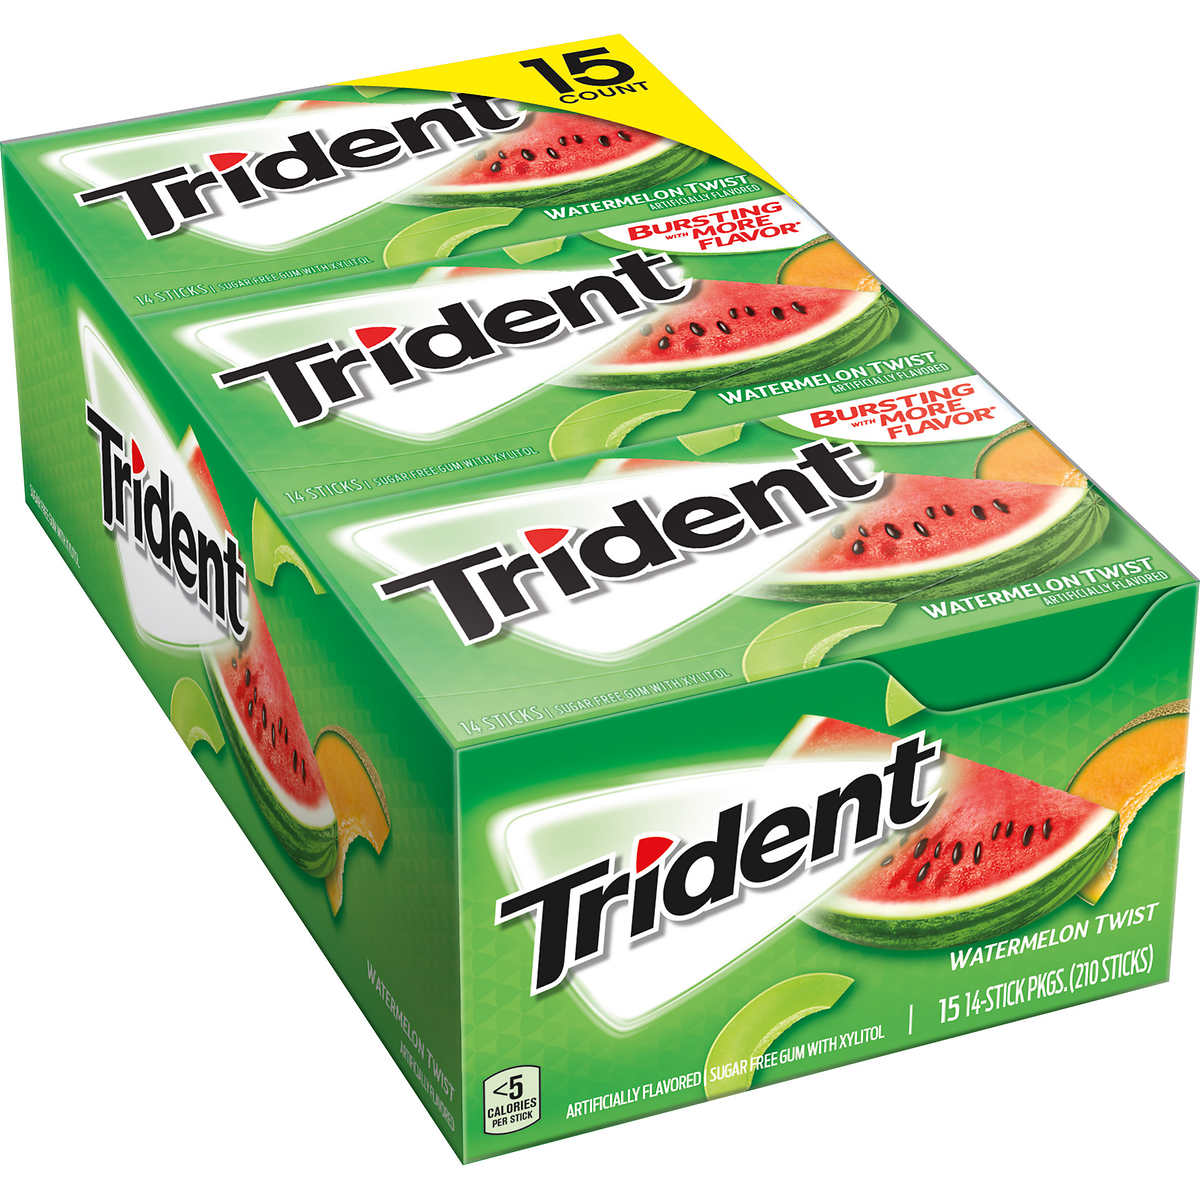 Trident Sugar-Free Gum, Watermelon Twist, 14 Pieces, 15-count